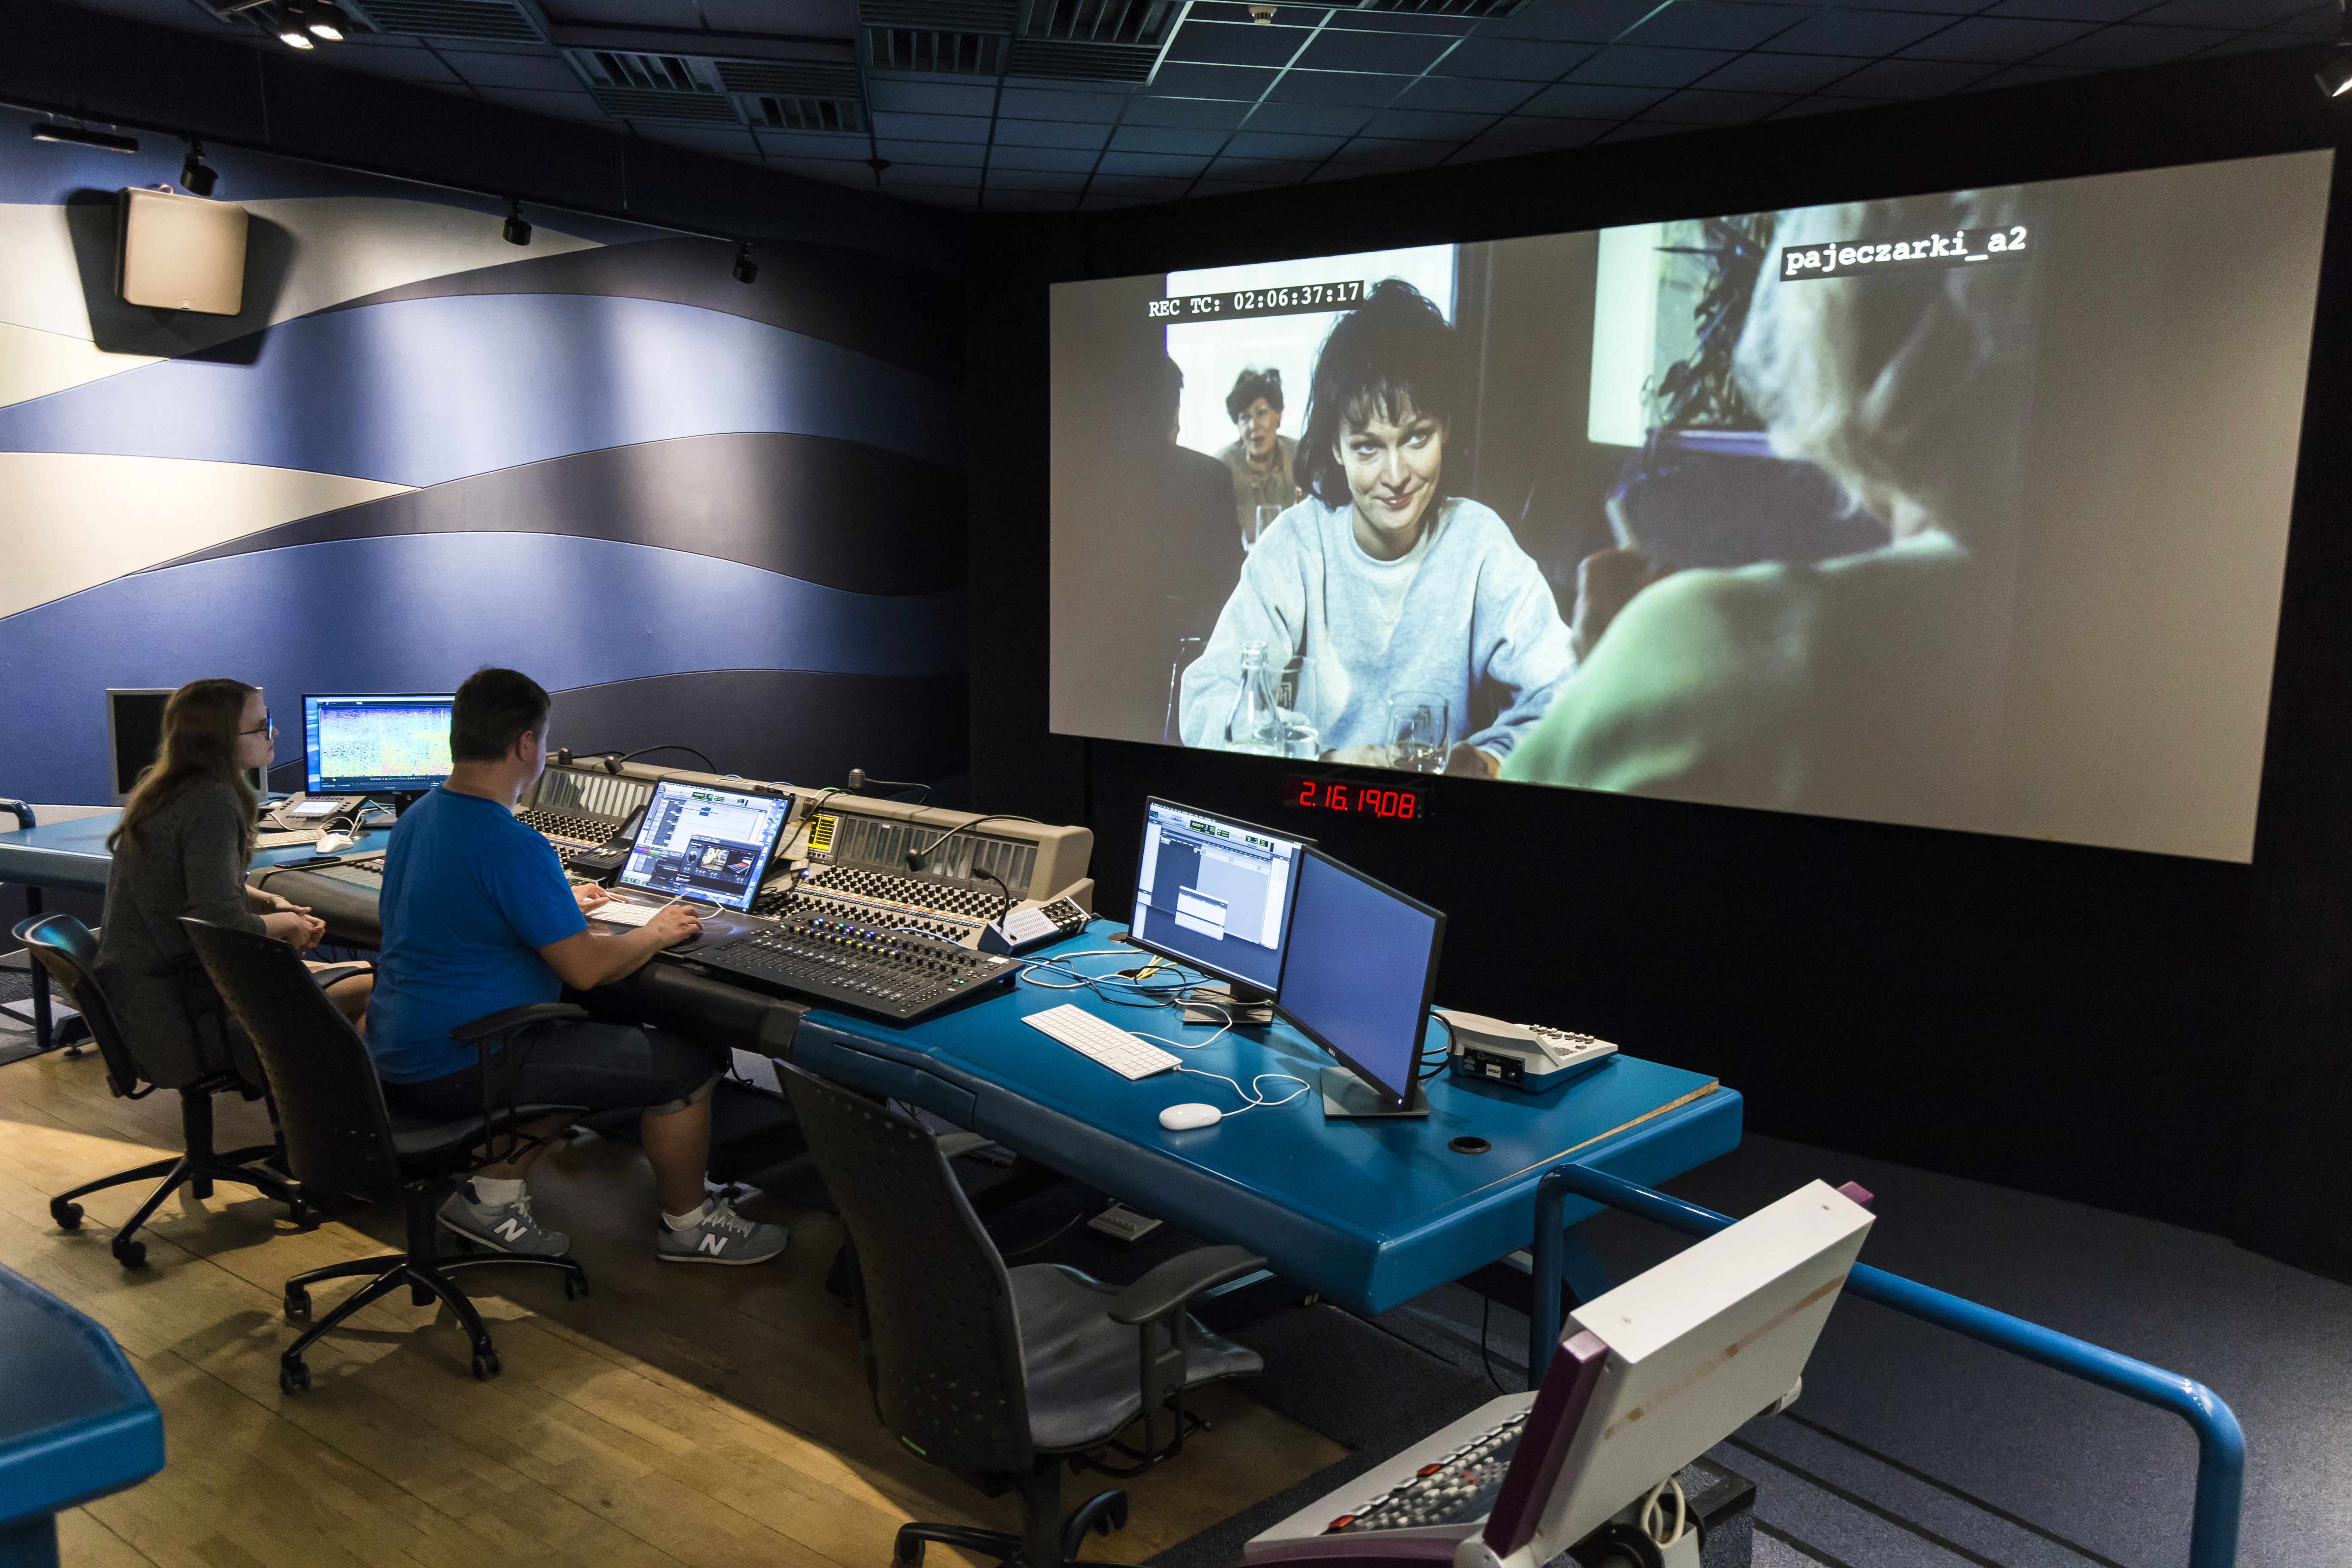 Zdjęcie przedstawia studio filmowe, z widocznym dużym ekranem kinowym oraz miejscem pracy reżysera.